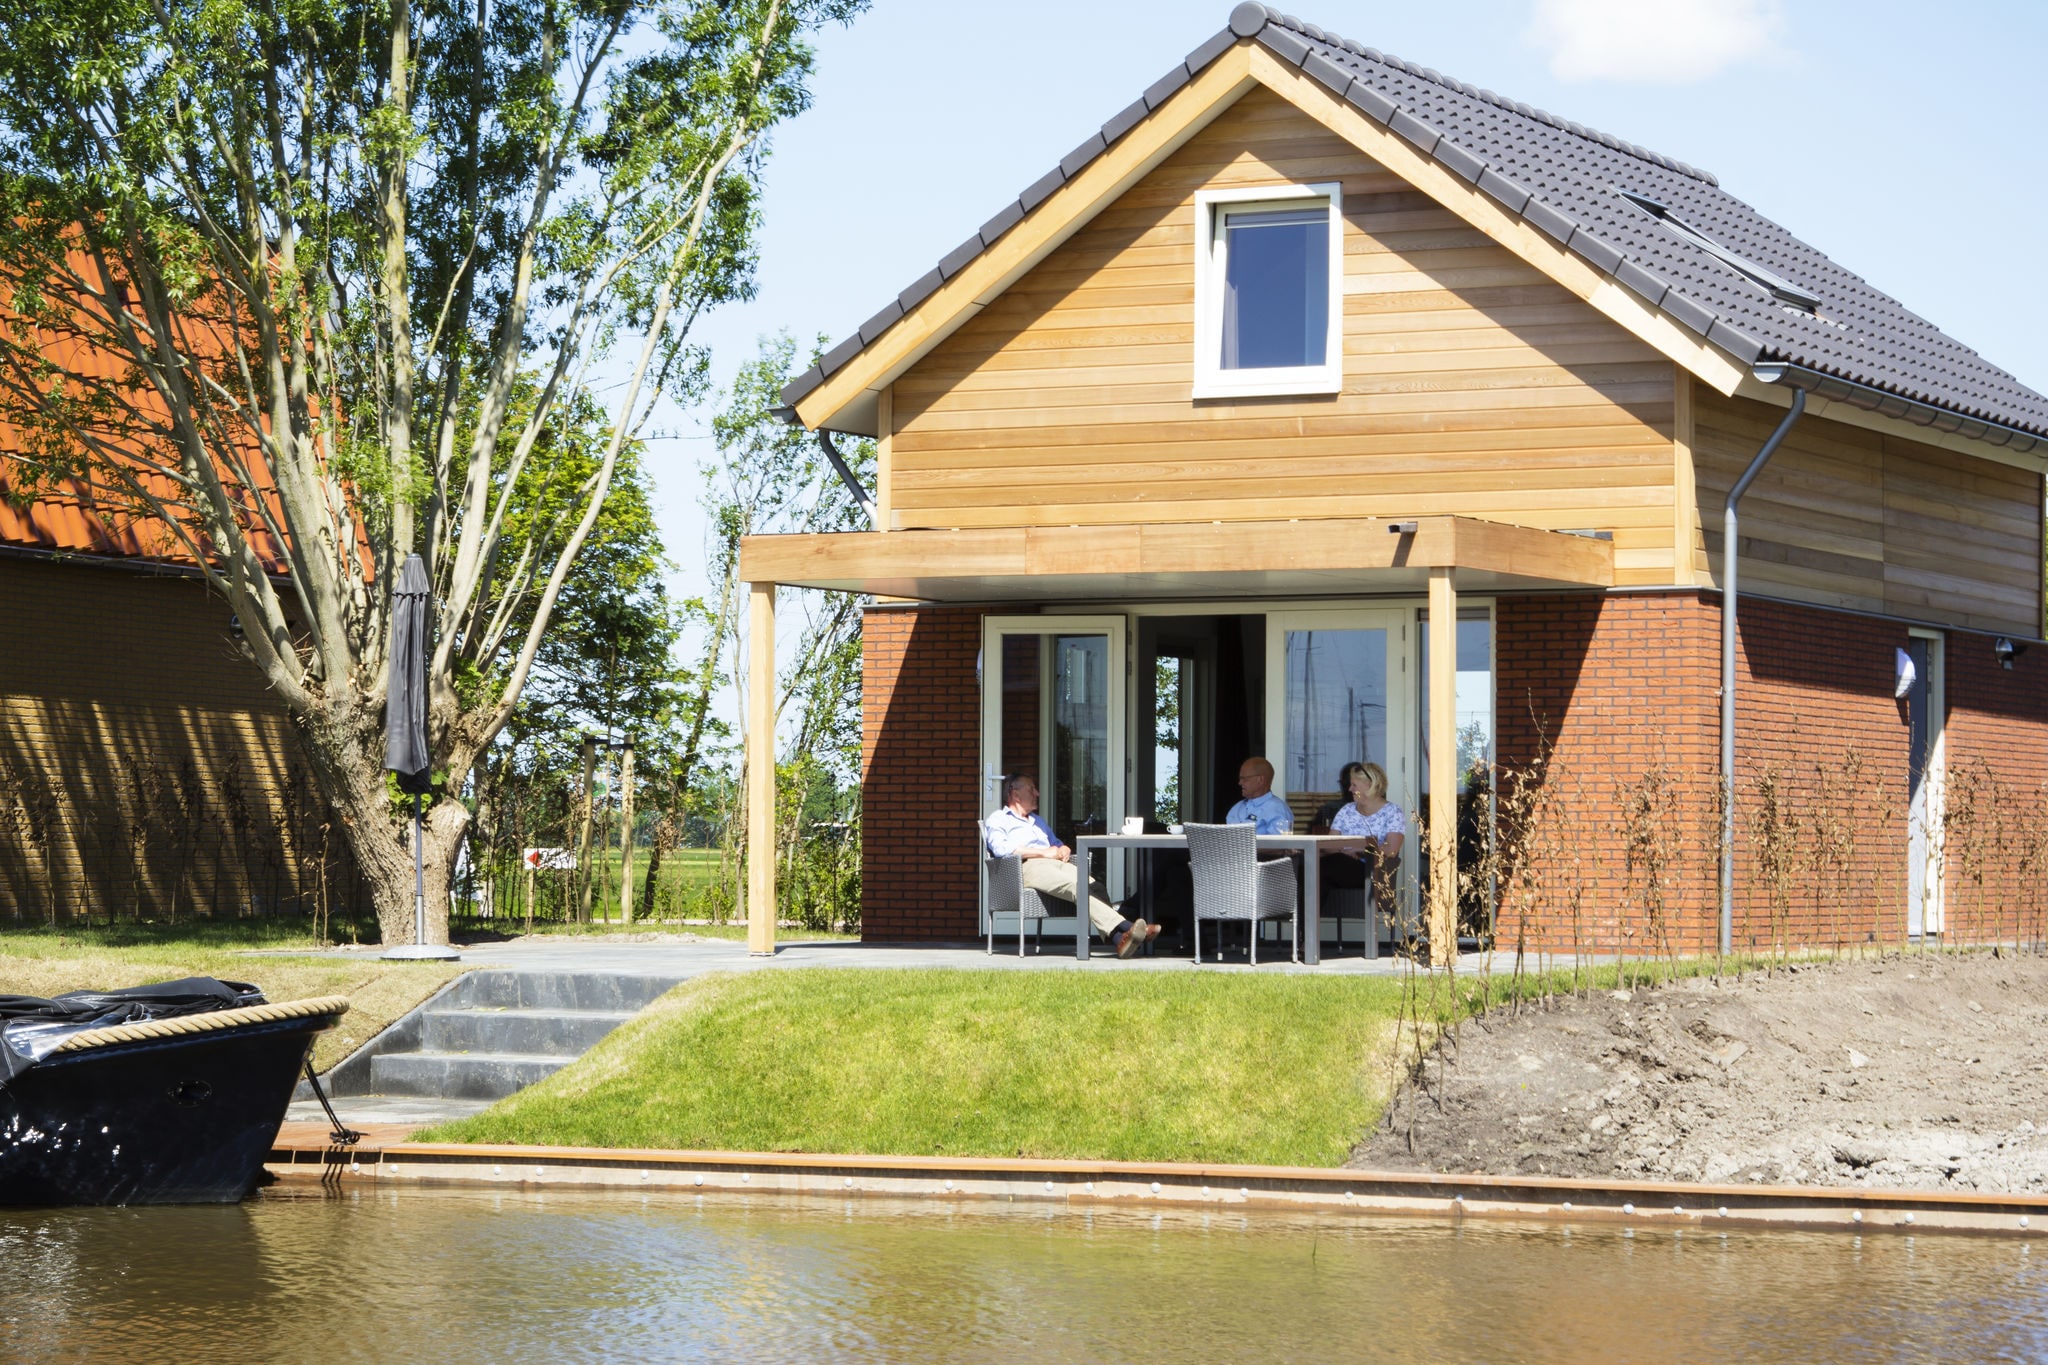 Maison de vacances moderne avec terrasse aquatique